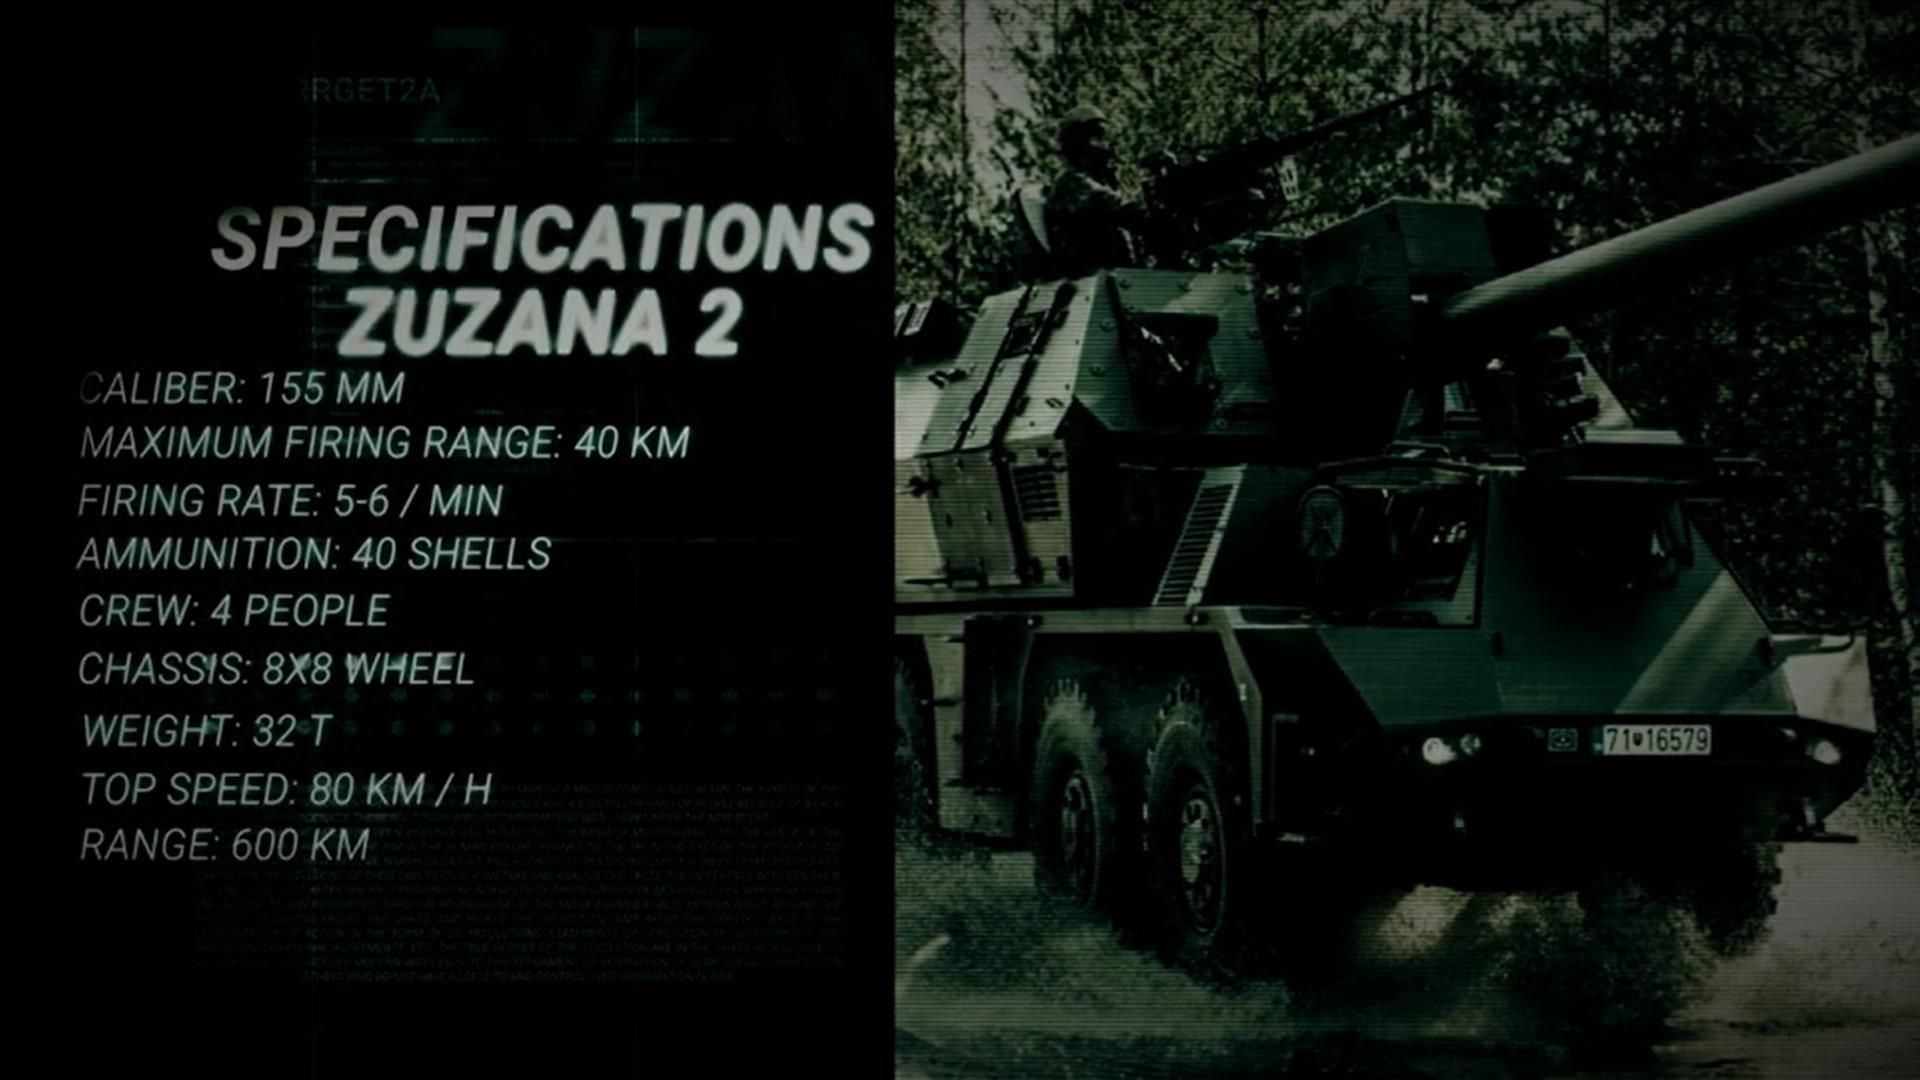 Zuzana 2  weapons of victory for Ukraine (video) - en